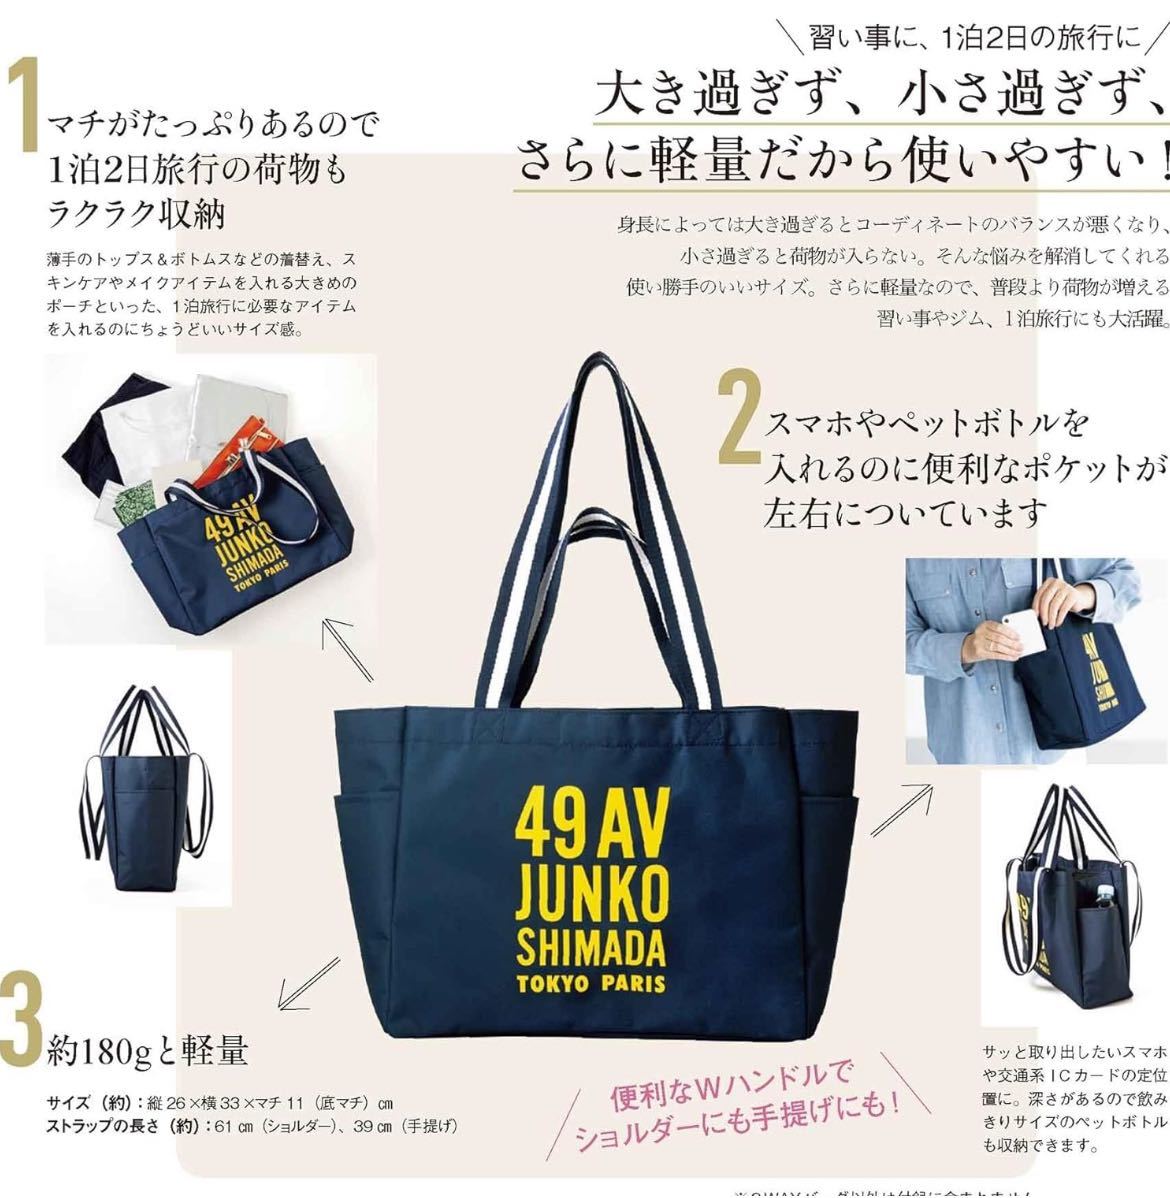 ○雑誌付録 49AV JUNKO SHIMADA TOKYO PARIS 2wayトートバッグの画像3